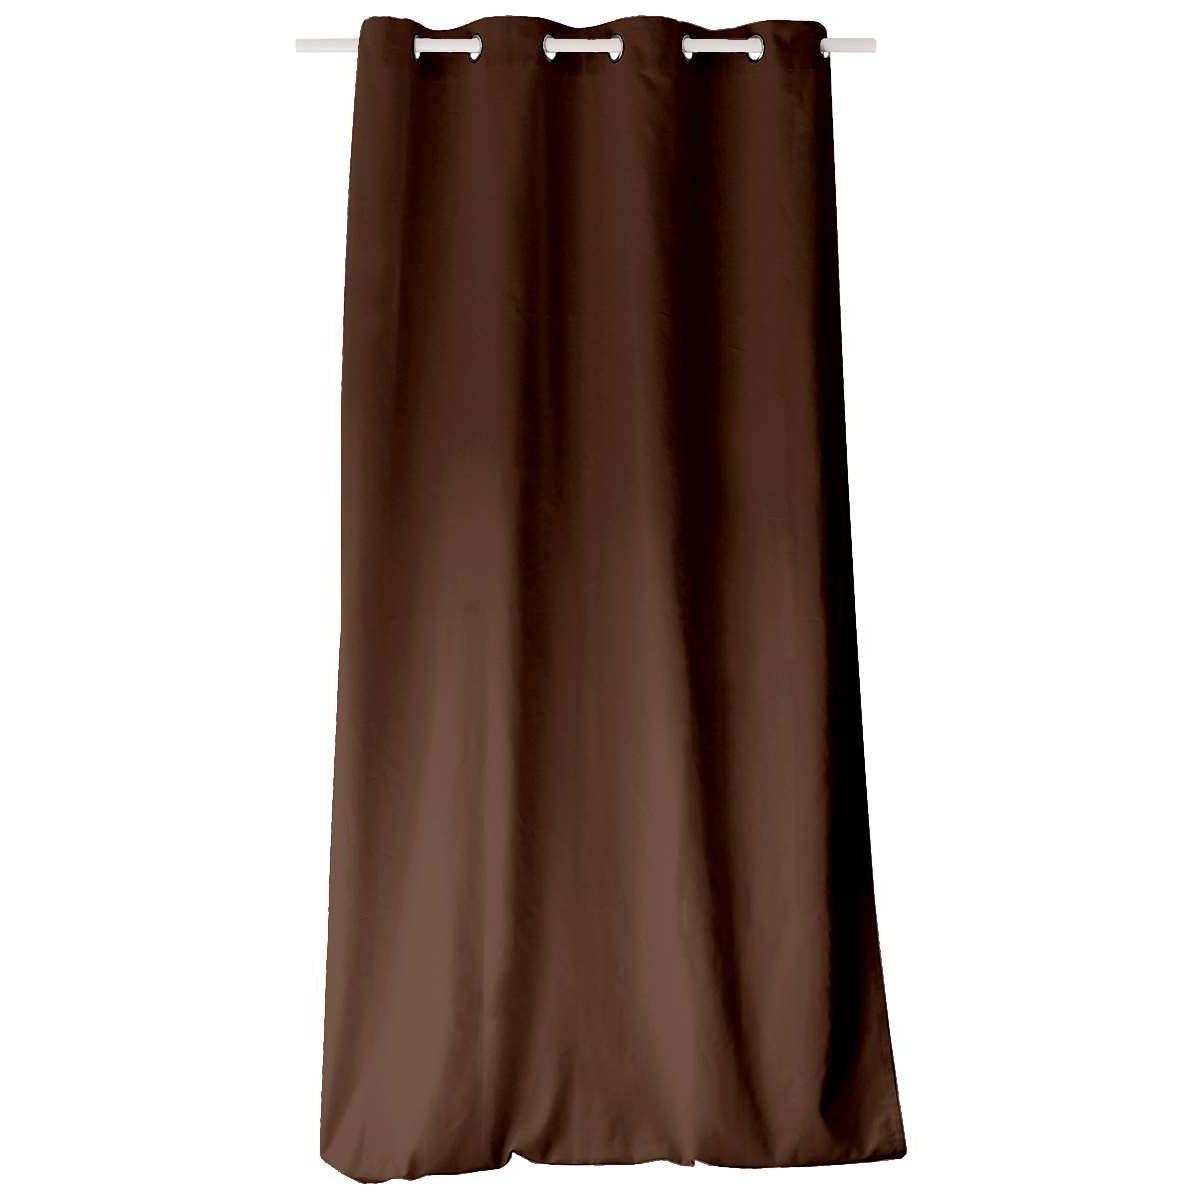 Panneau à œillets - 135 x 240 cm - Marron chocolat